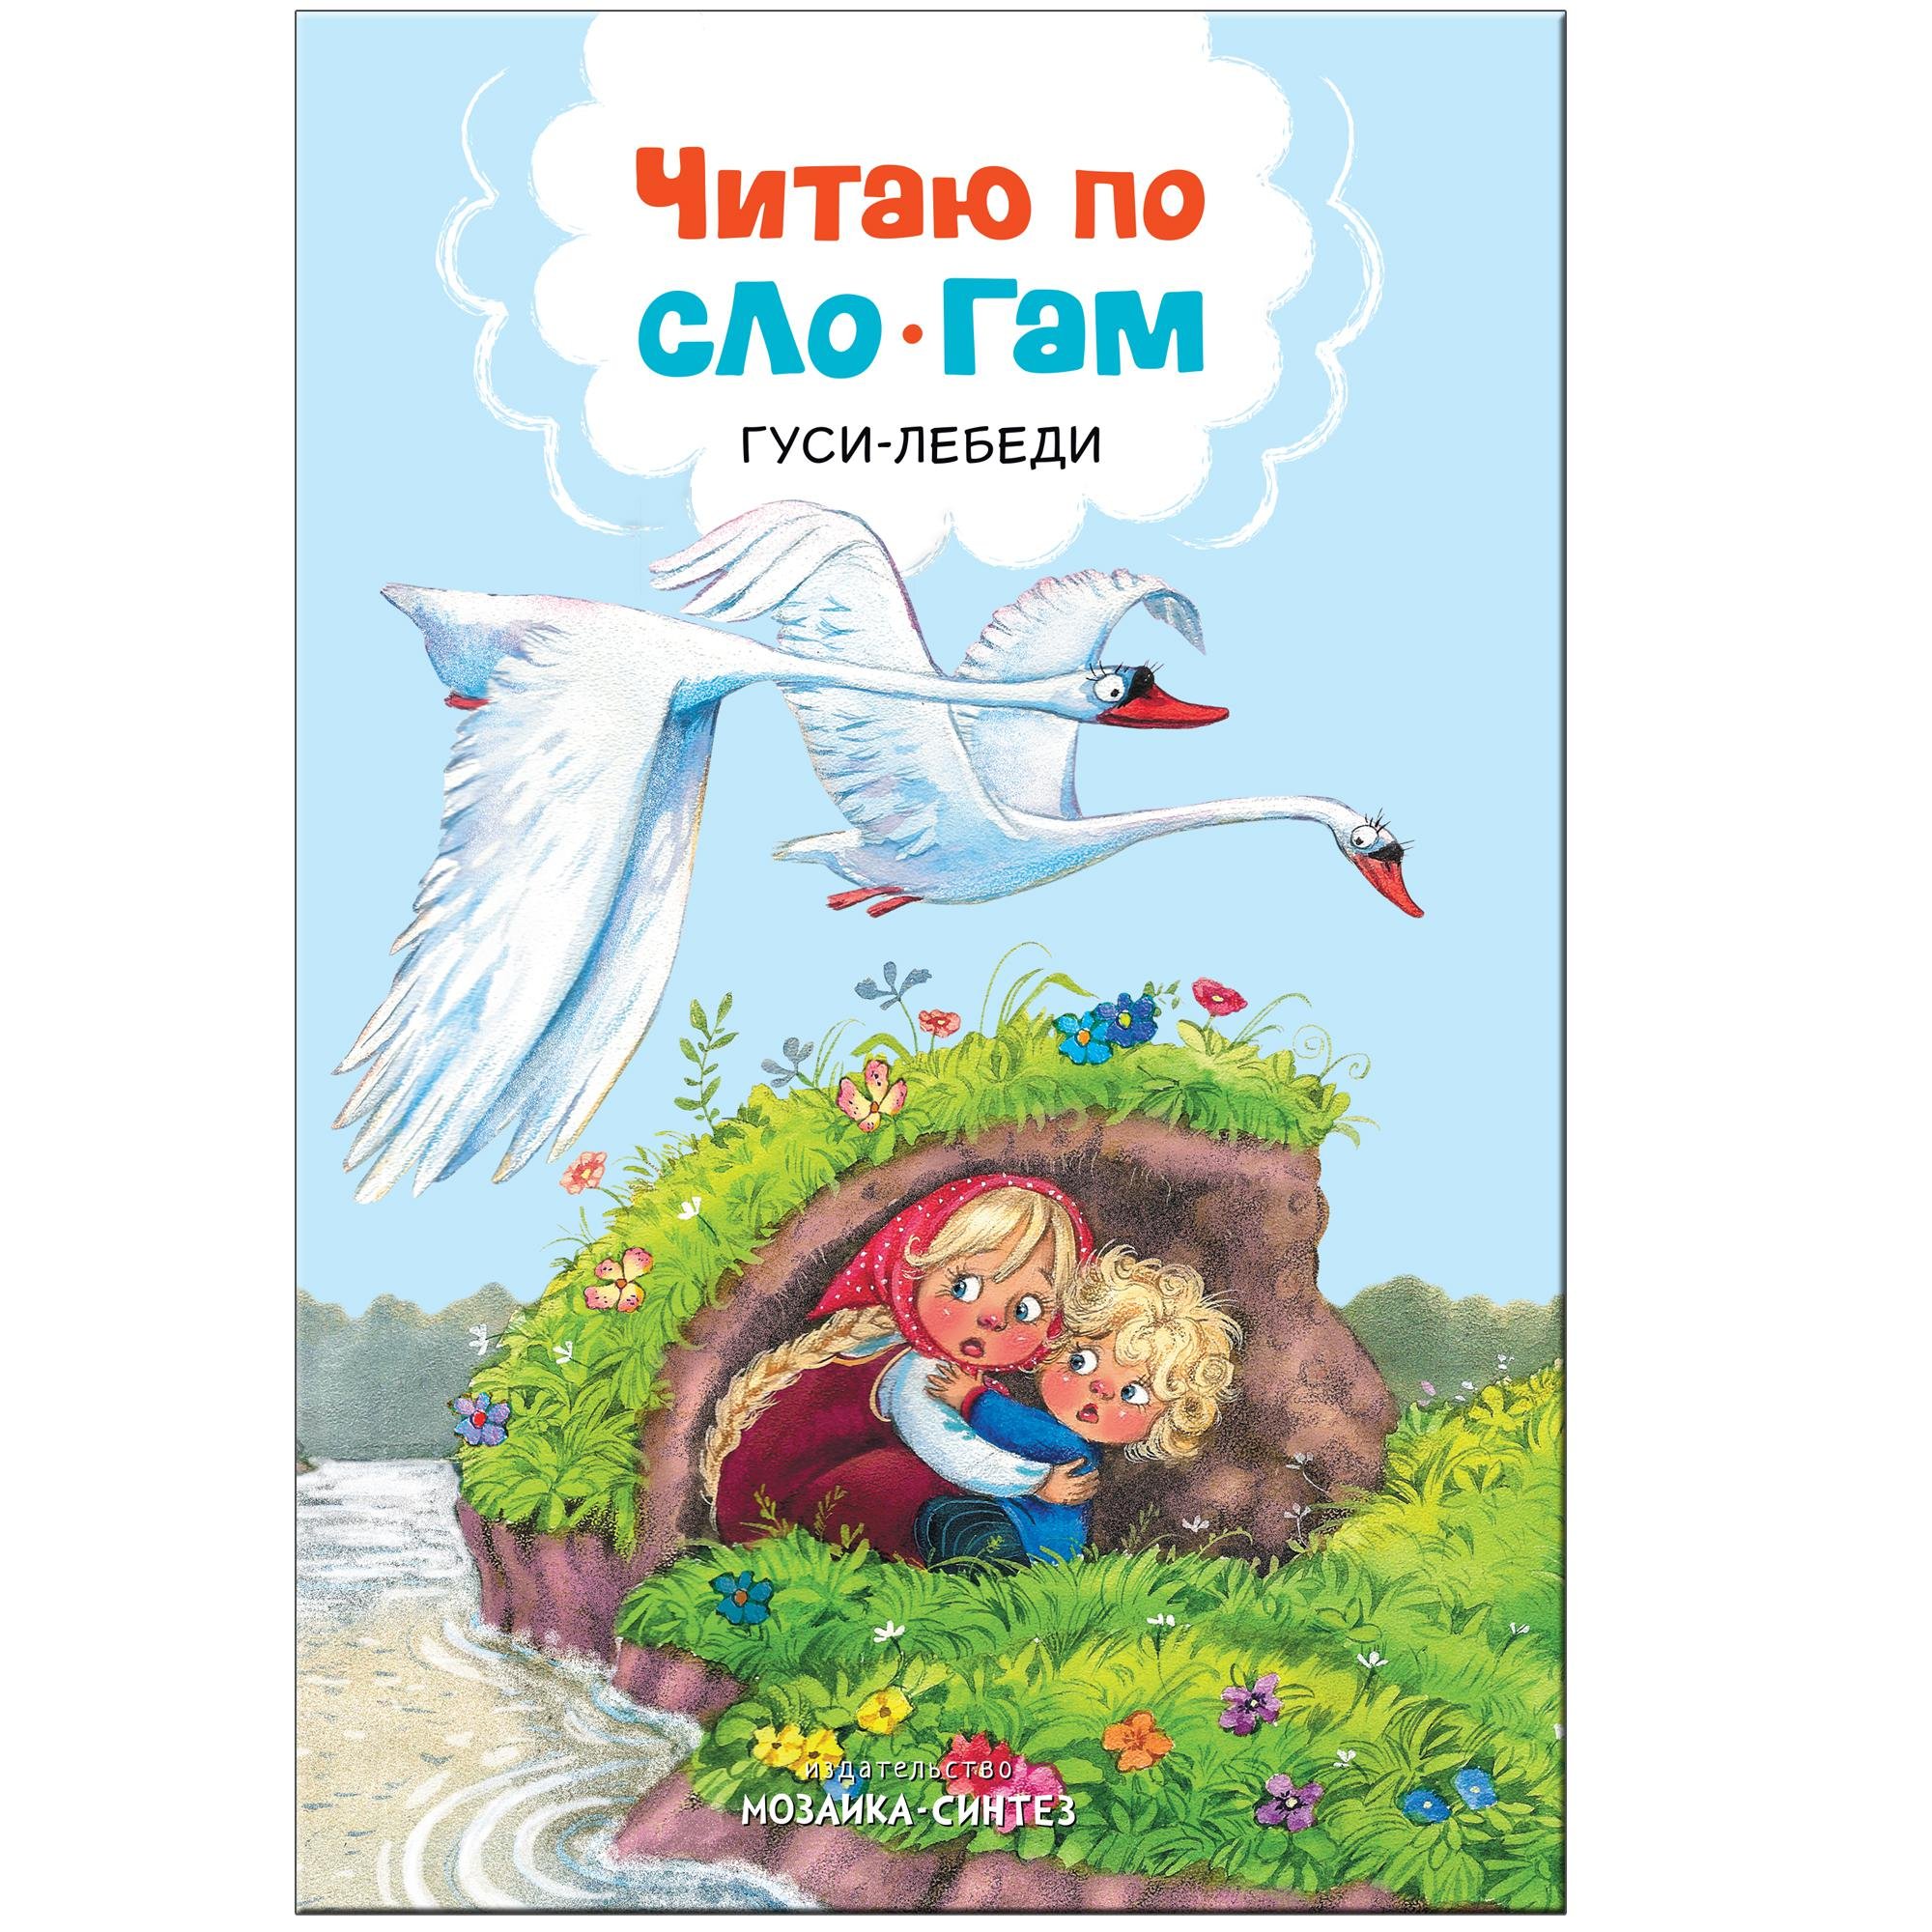 Zakazat.ru: Читаю по слогам. Гуси-лебеди